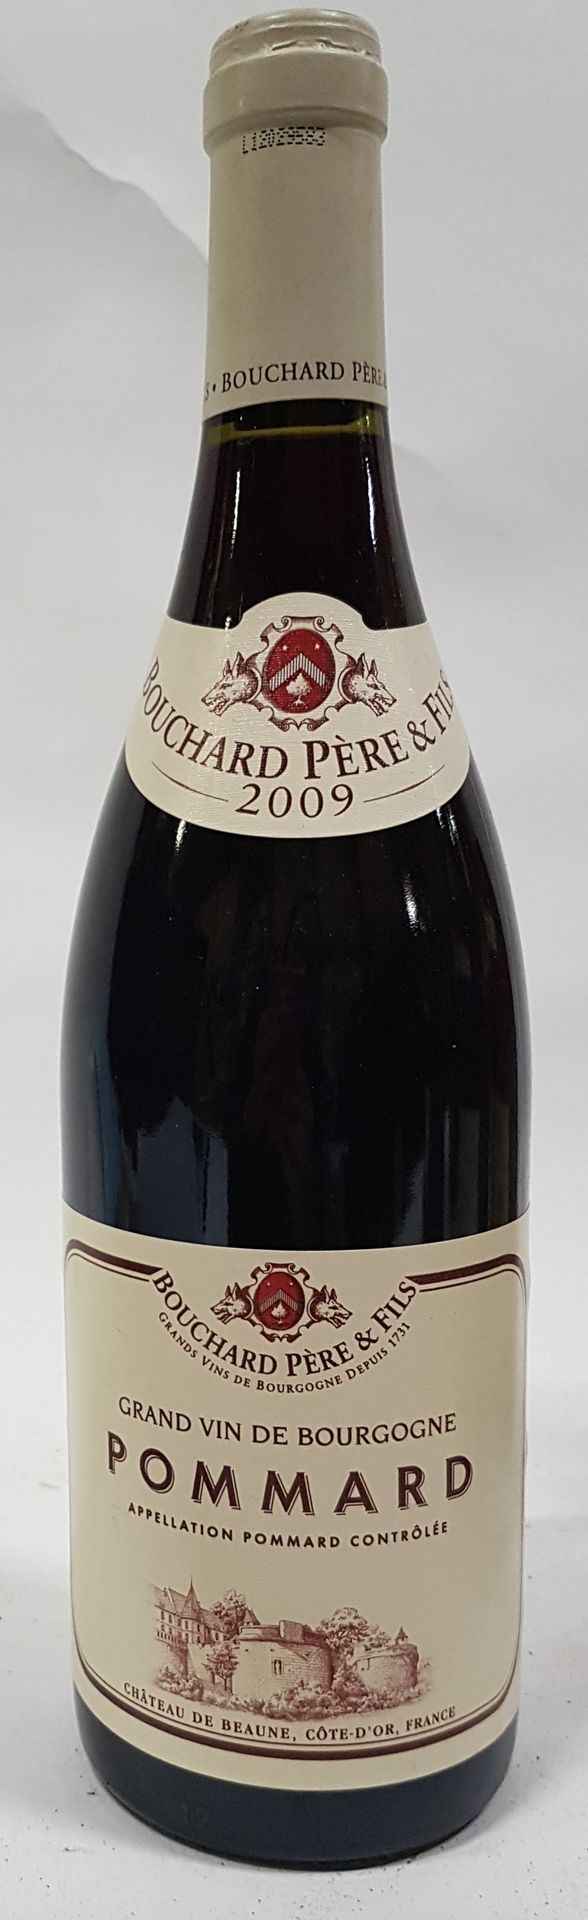 Null ● POMMARD | Bouchard Père & Fils, 2009

1 bouteille

Réf. 178